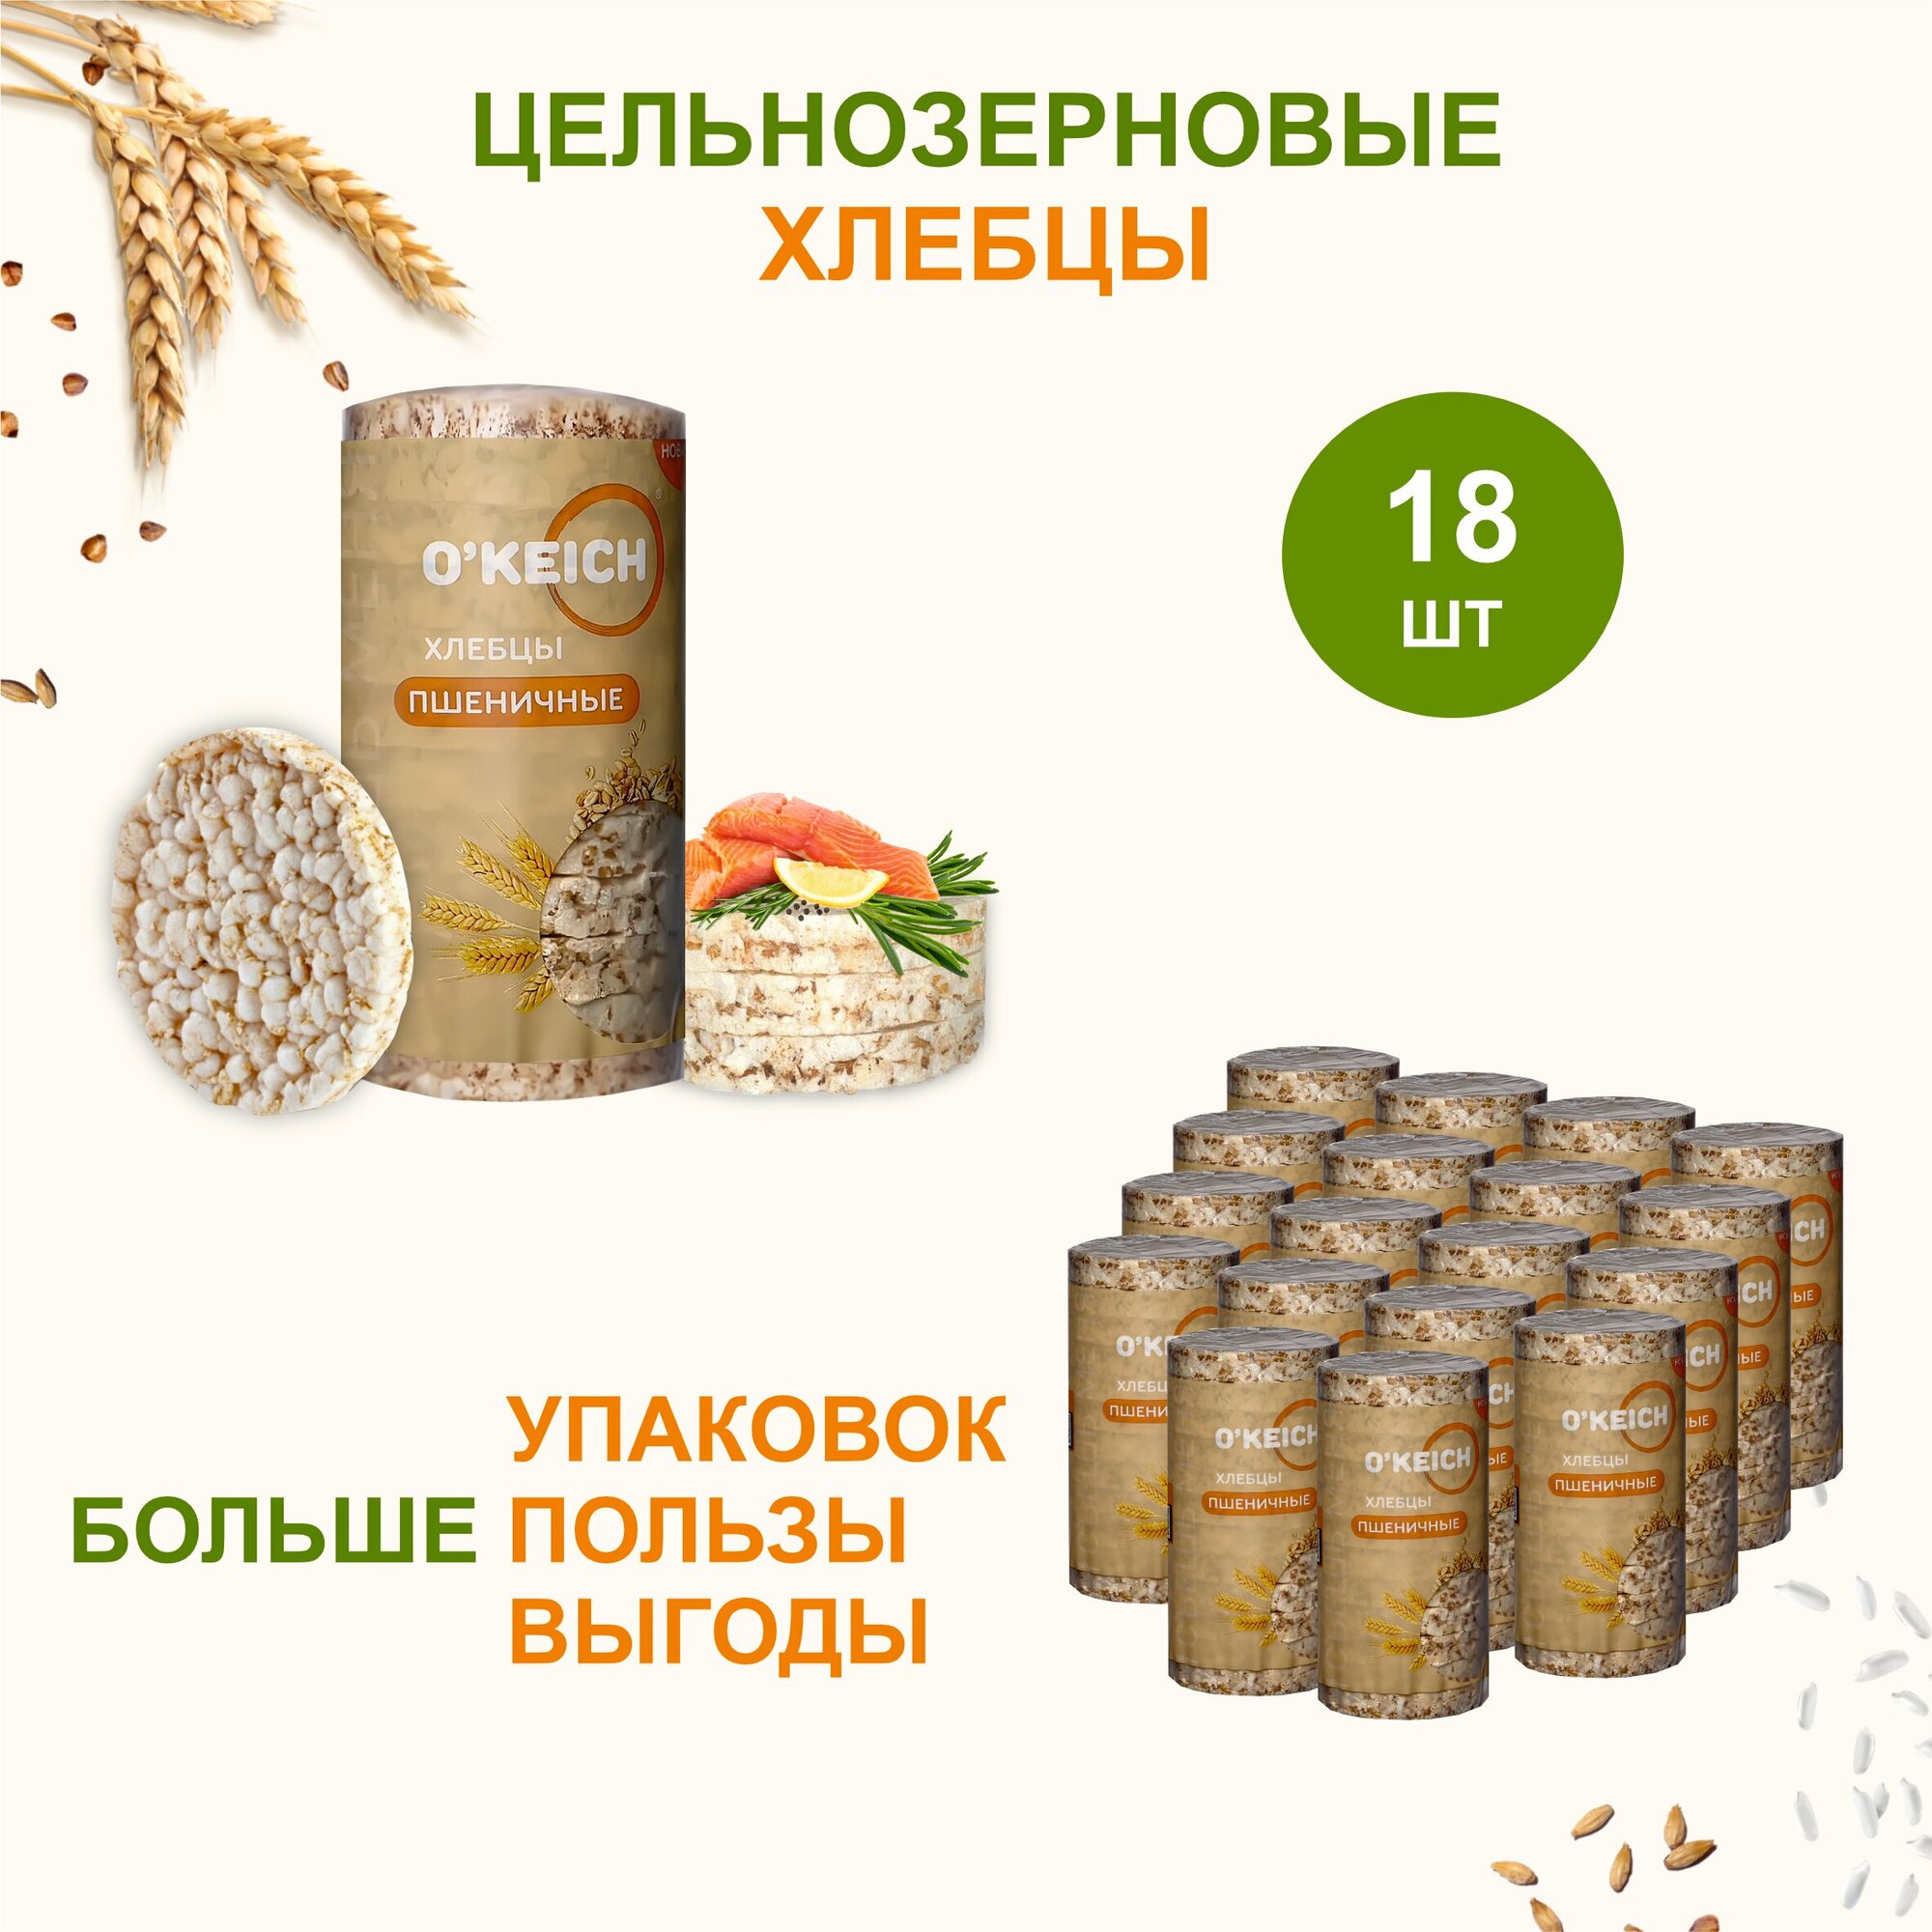 Хлебцы "Пшеничные" - 18 Упаковок по 100 Грамм